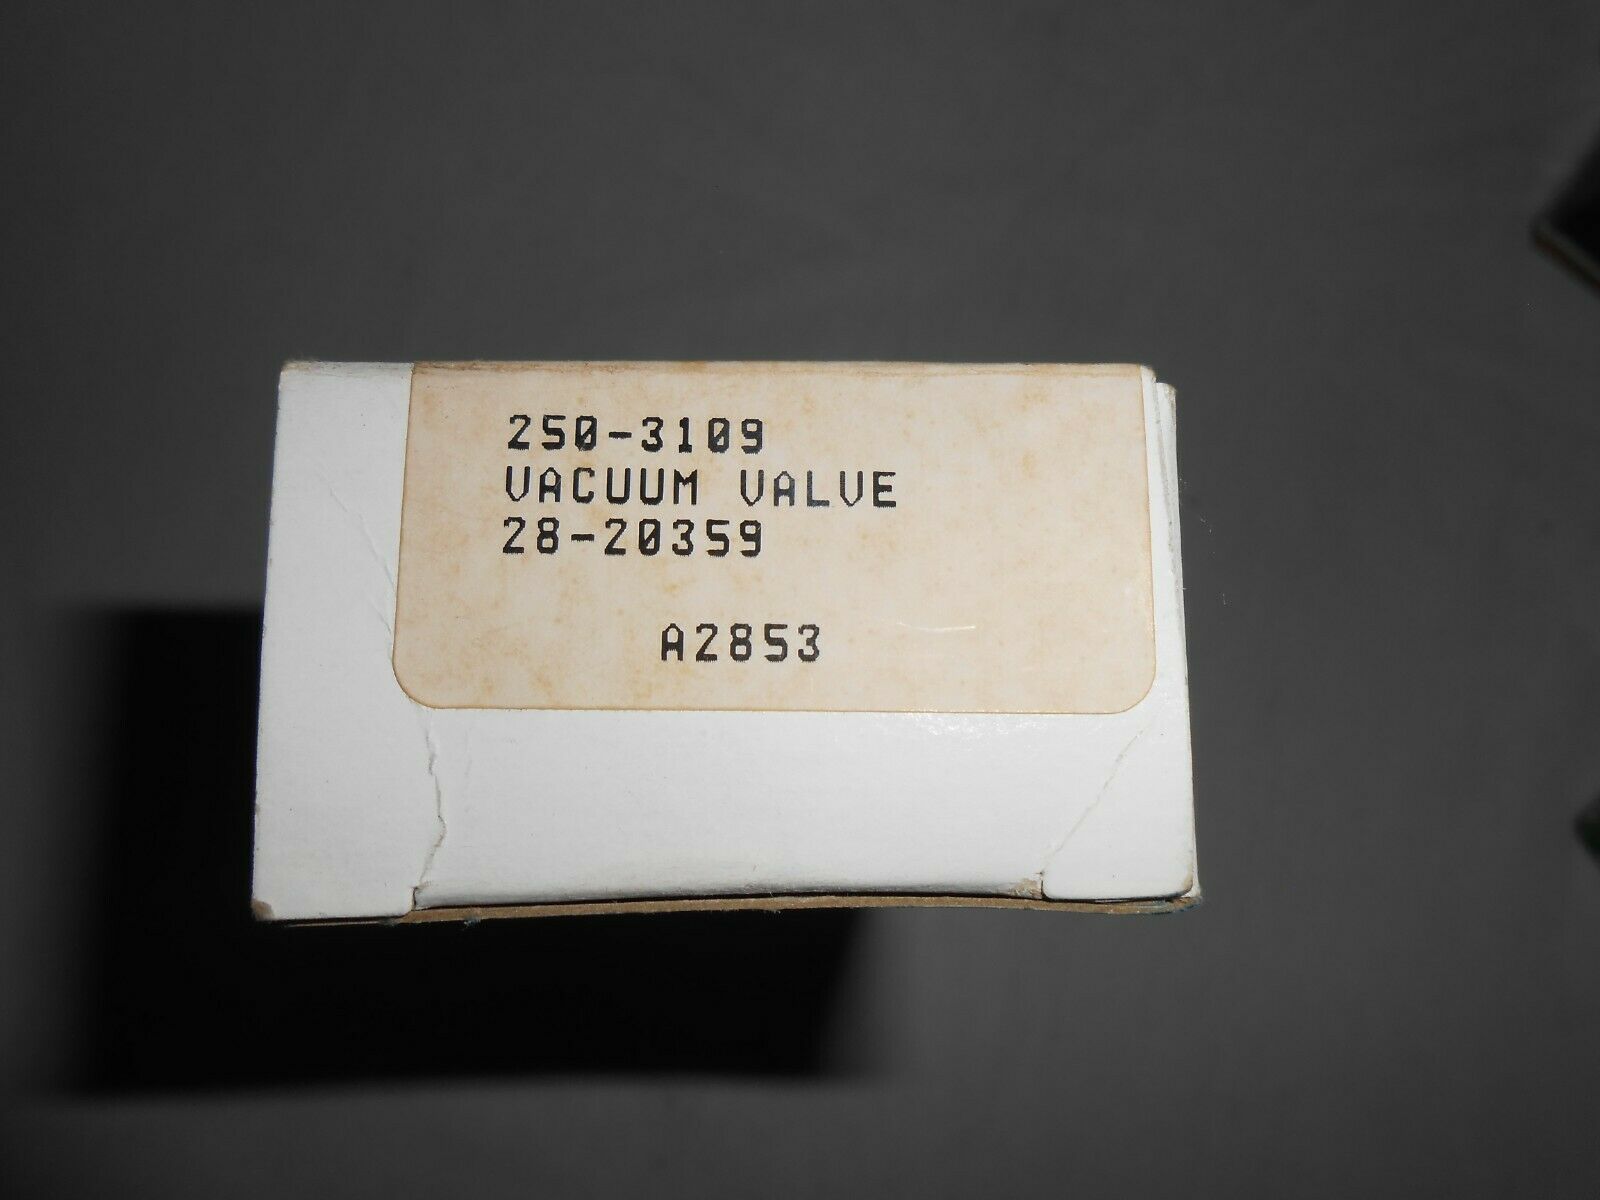 New In Box Vacuum Valve # 28-20359